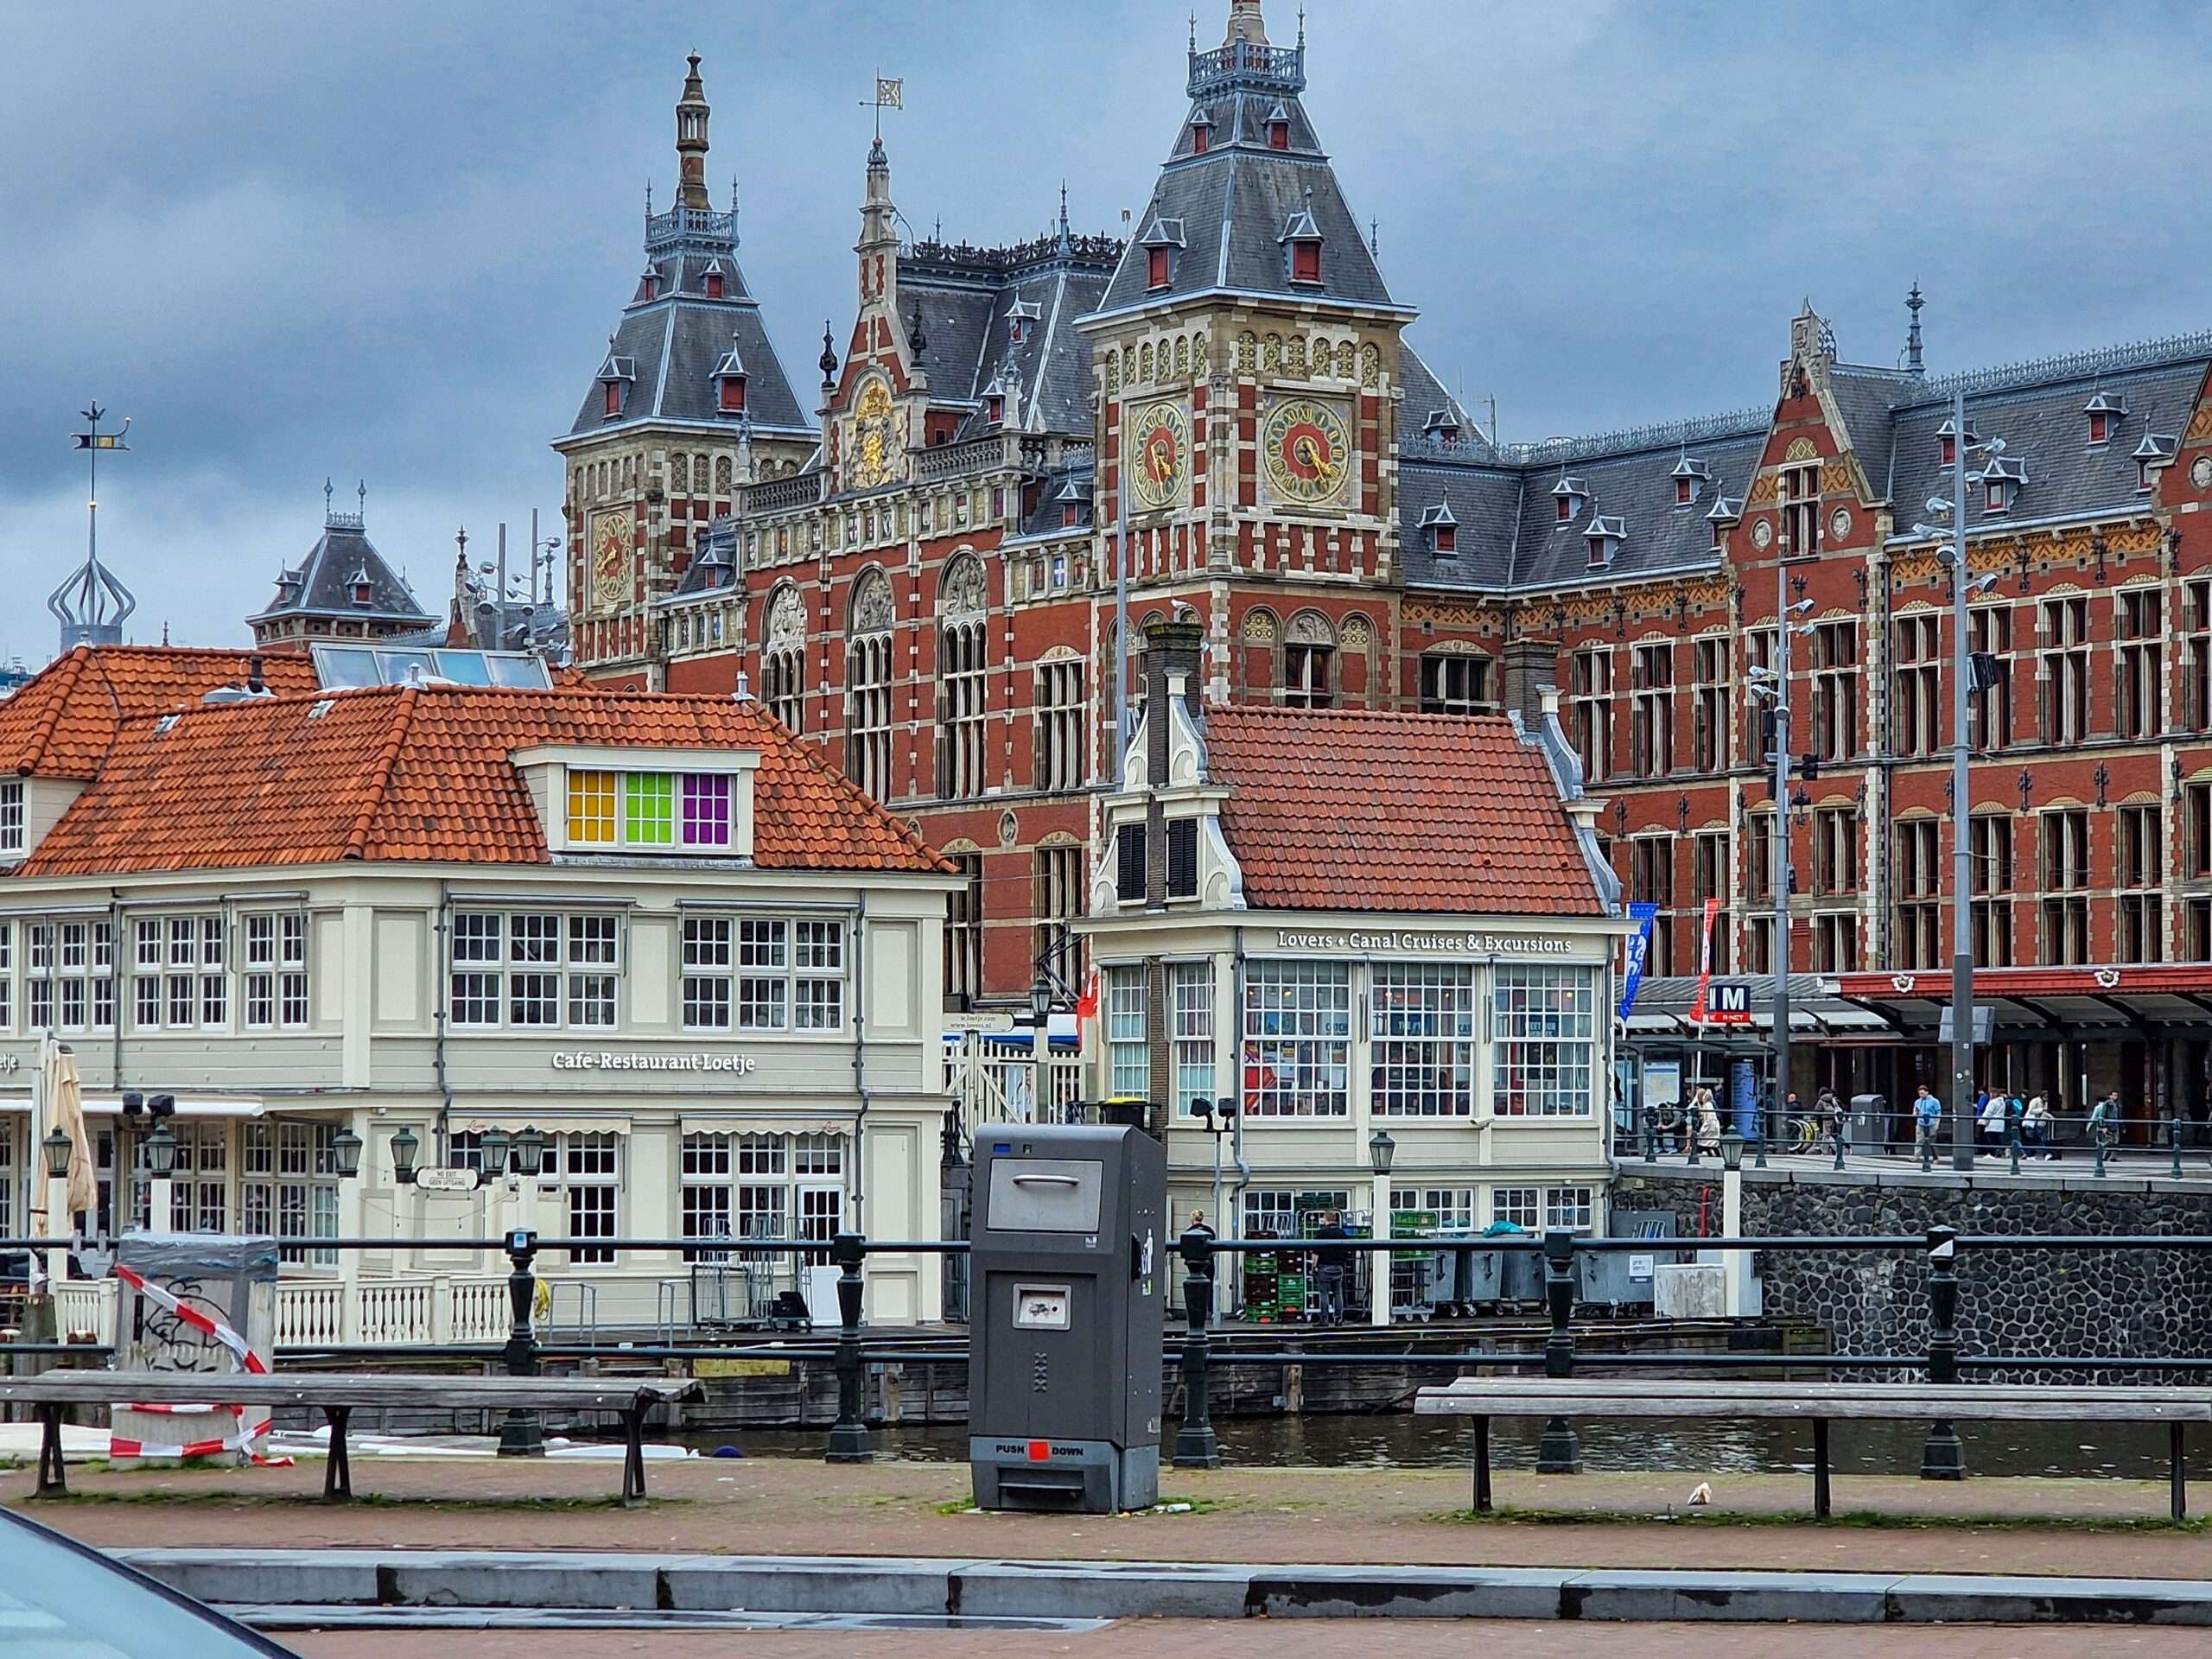 słynna restauracja w Amsterdamie ze słynnym dworcem kolejowym w jej tle